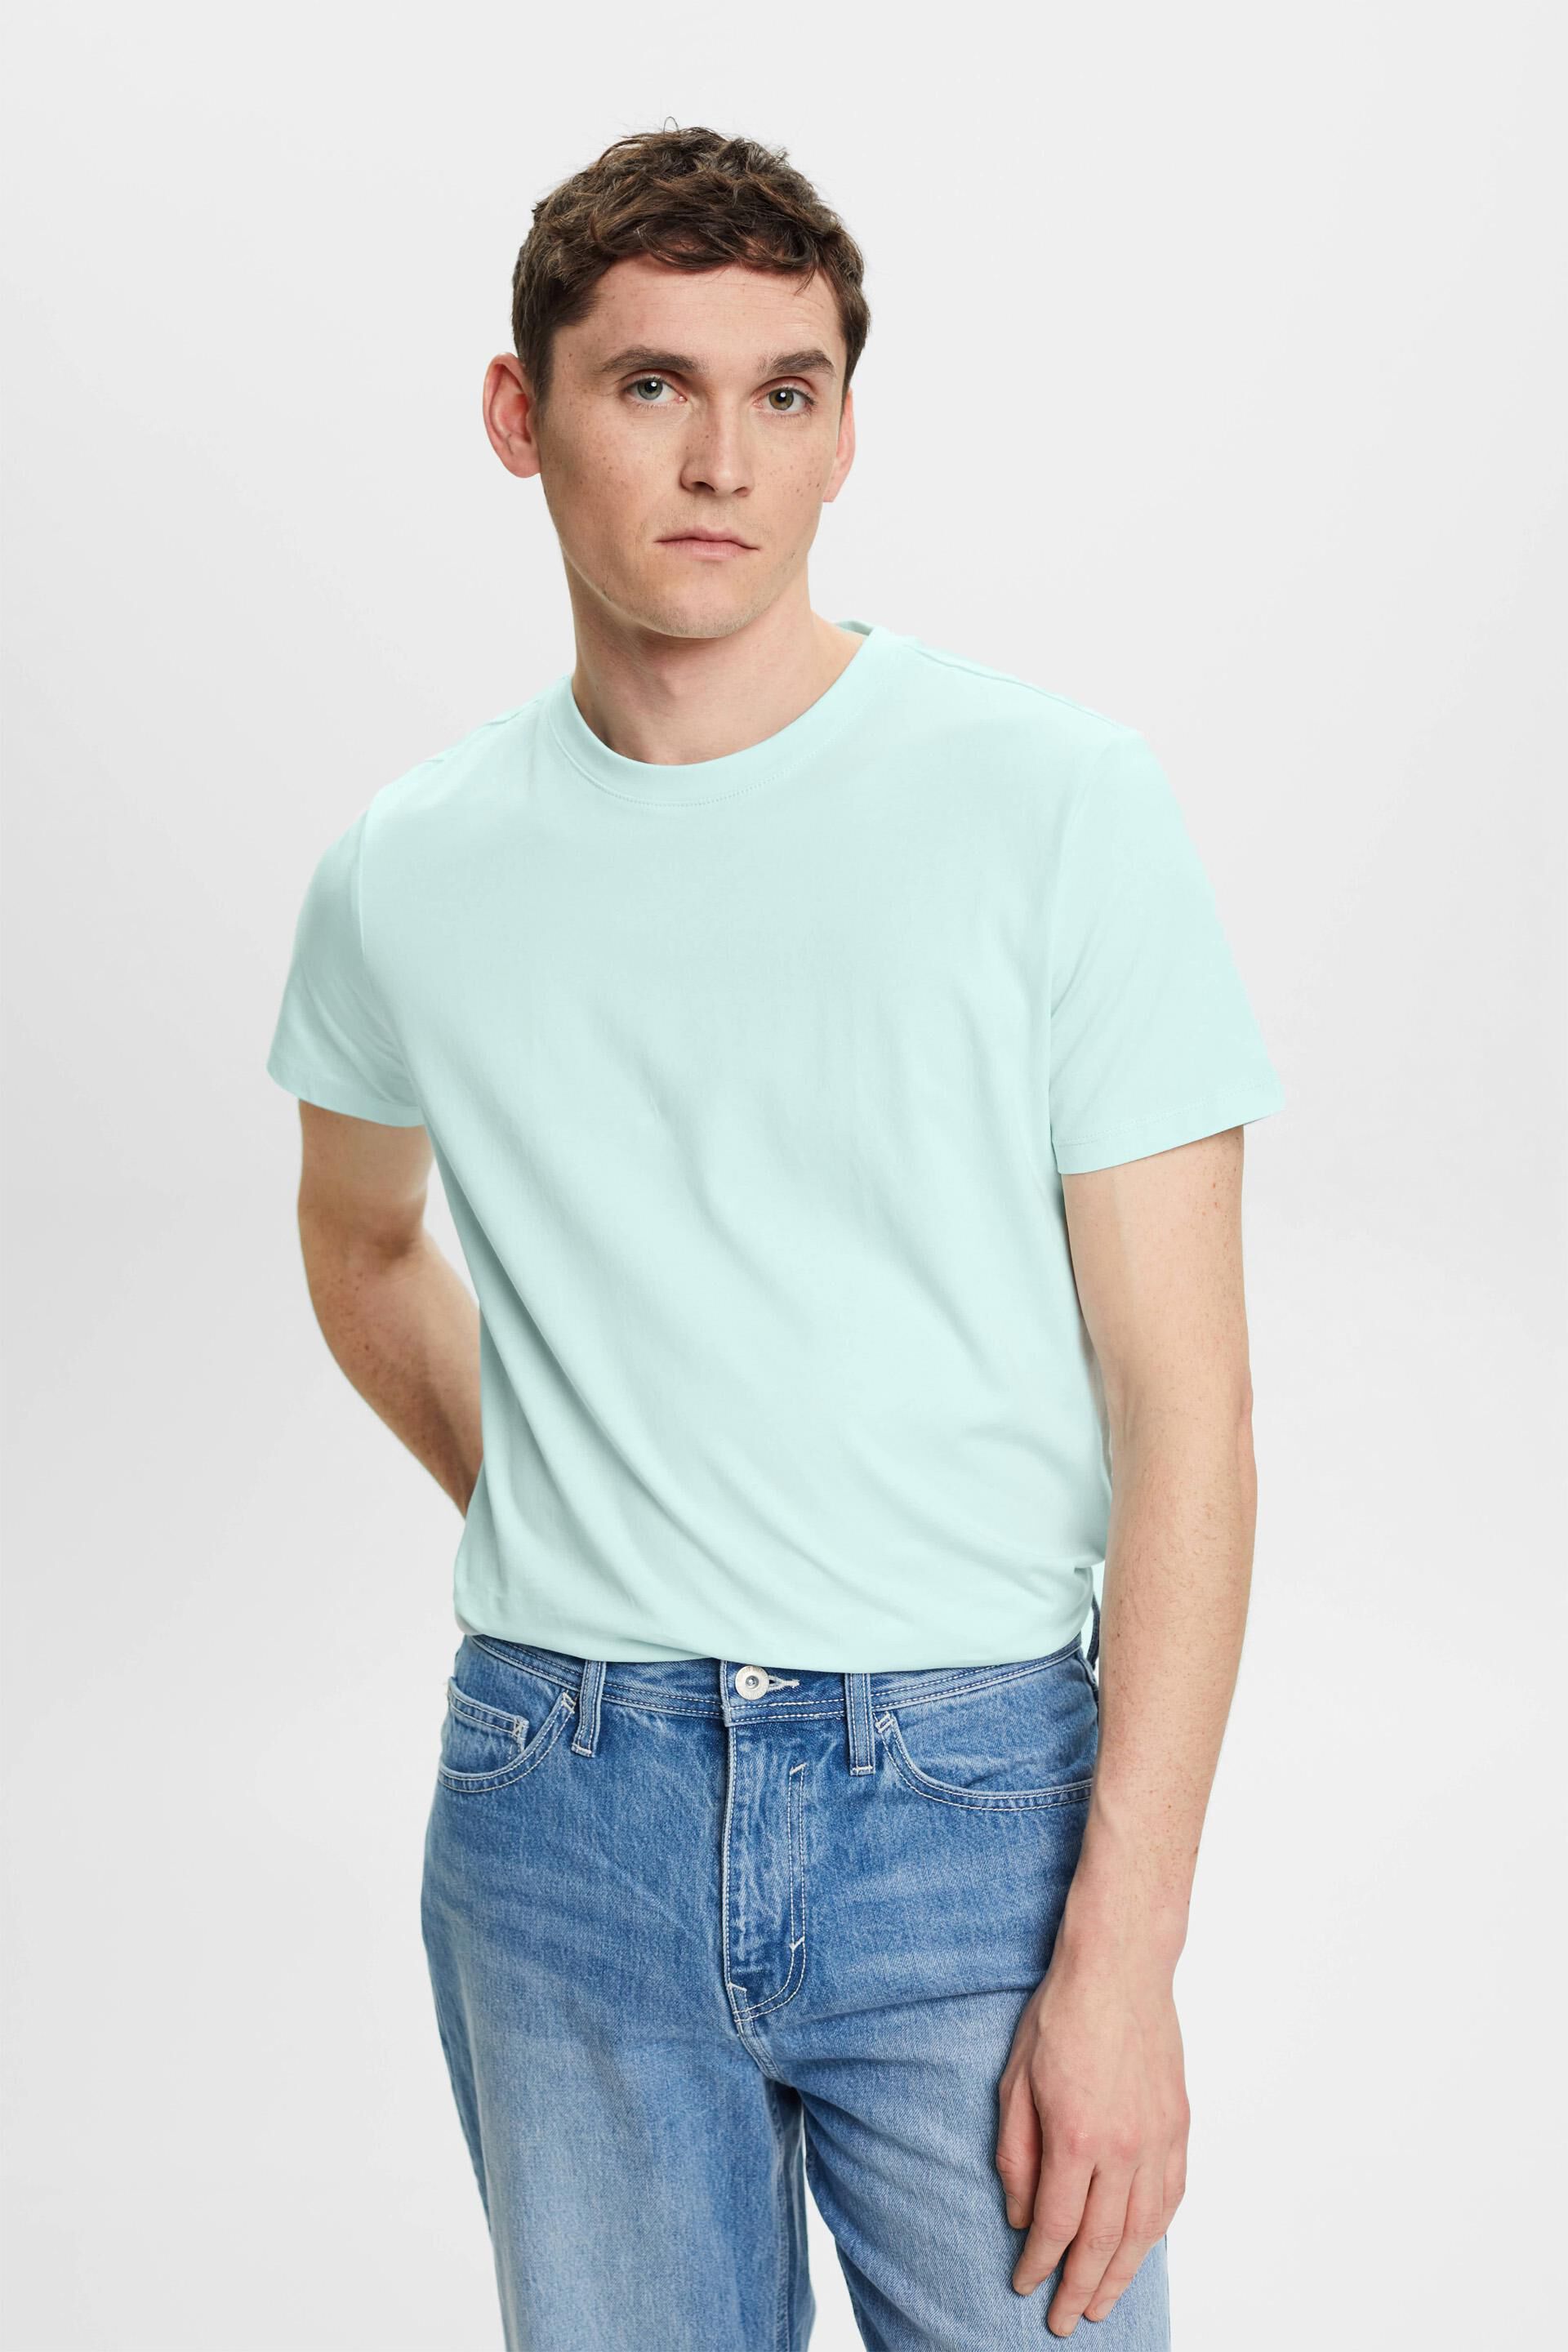 Esprit Slim fit cotton t-shirt